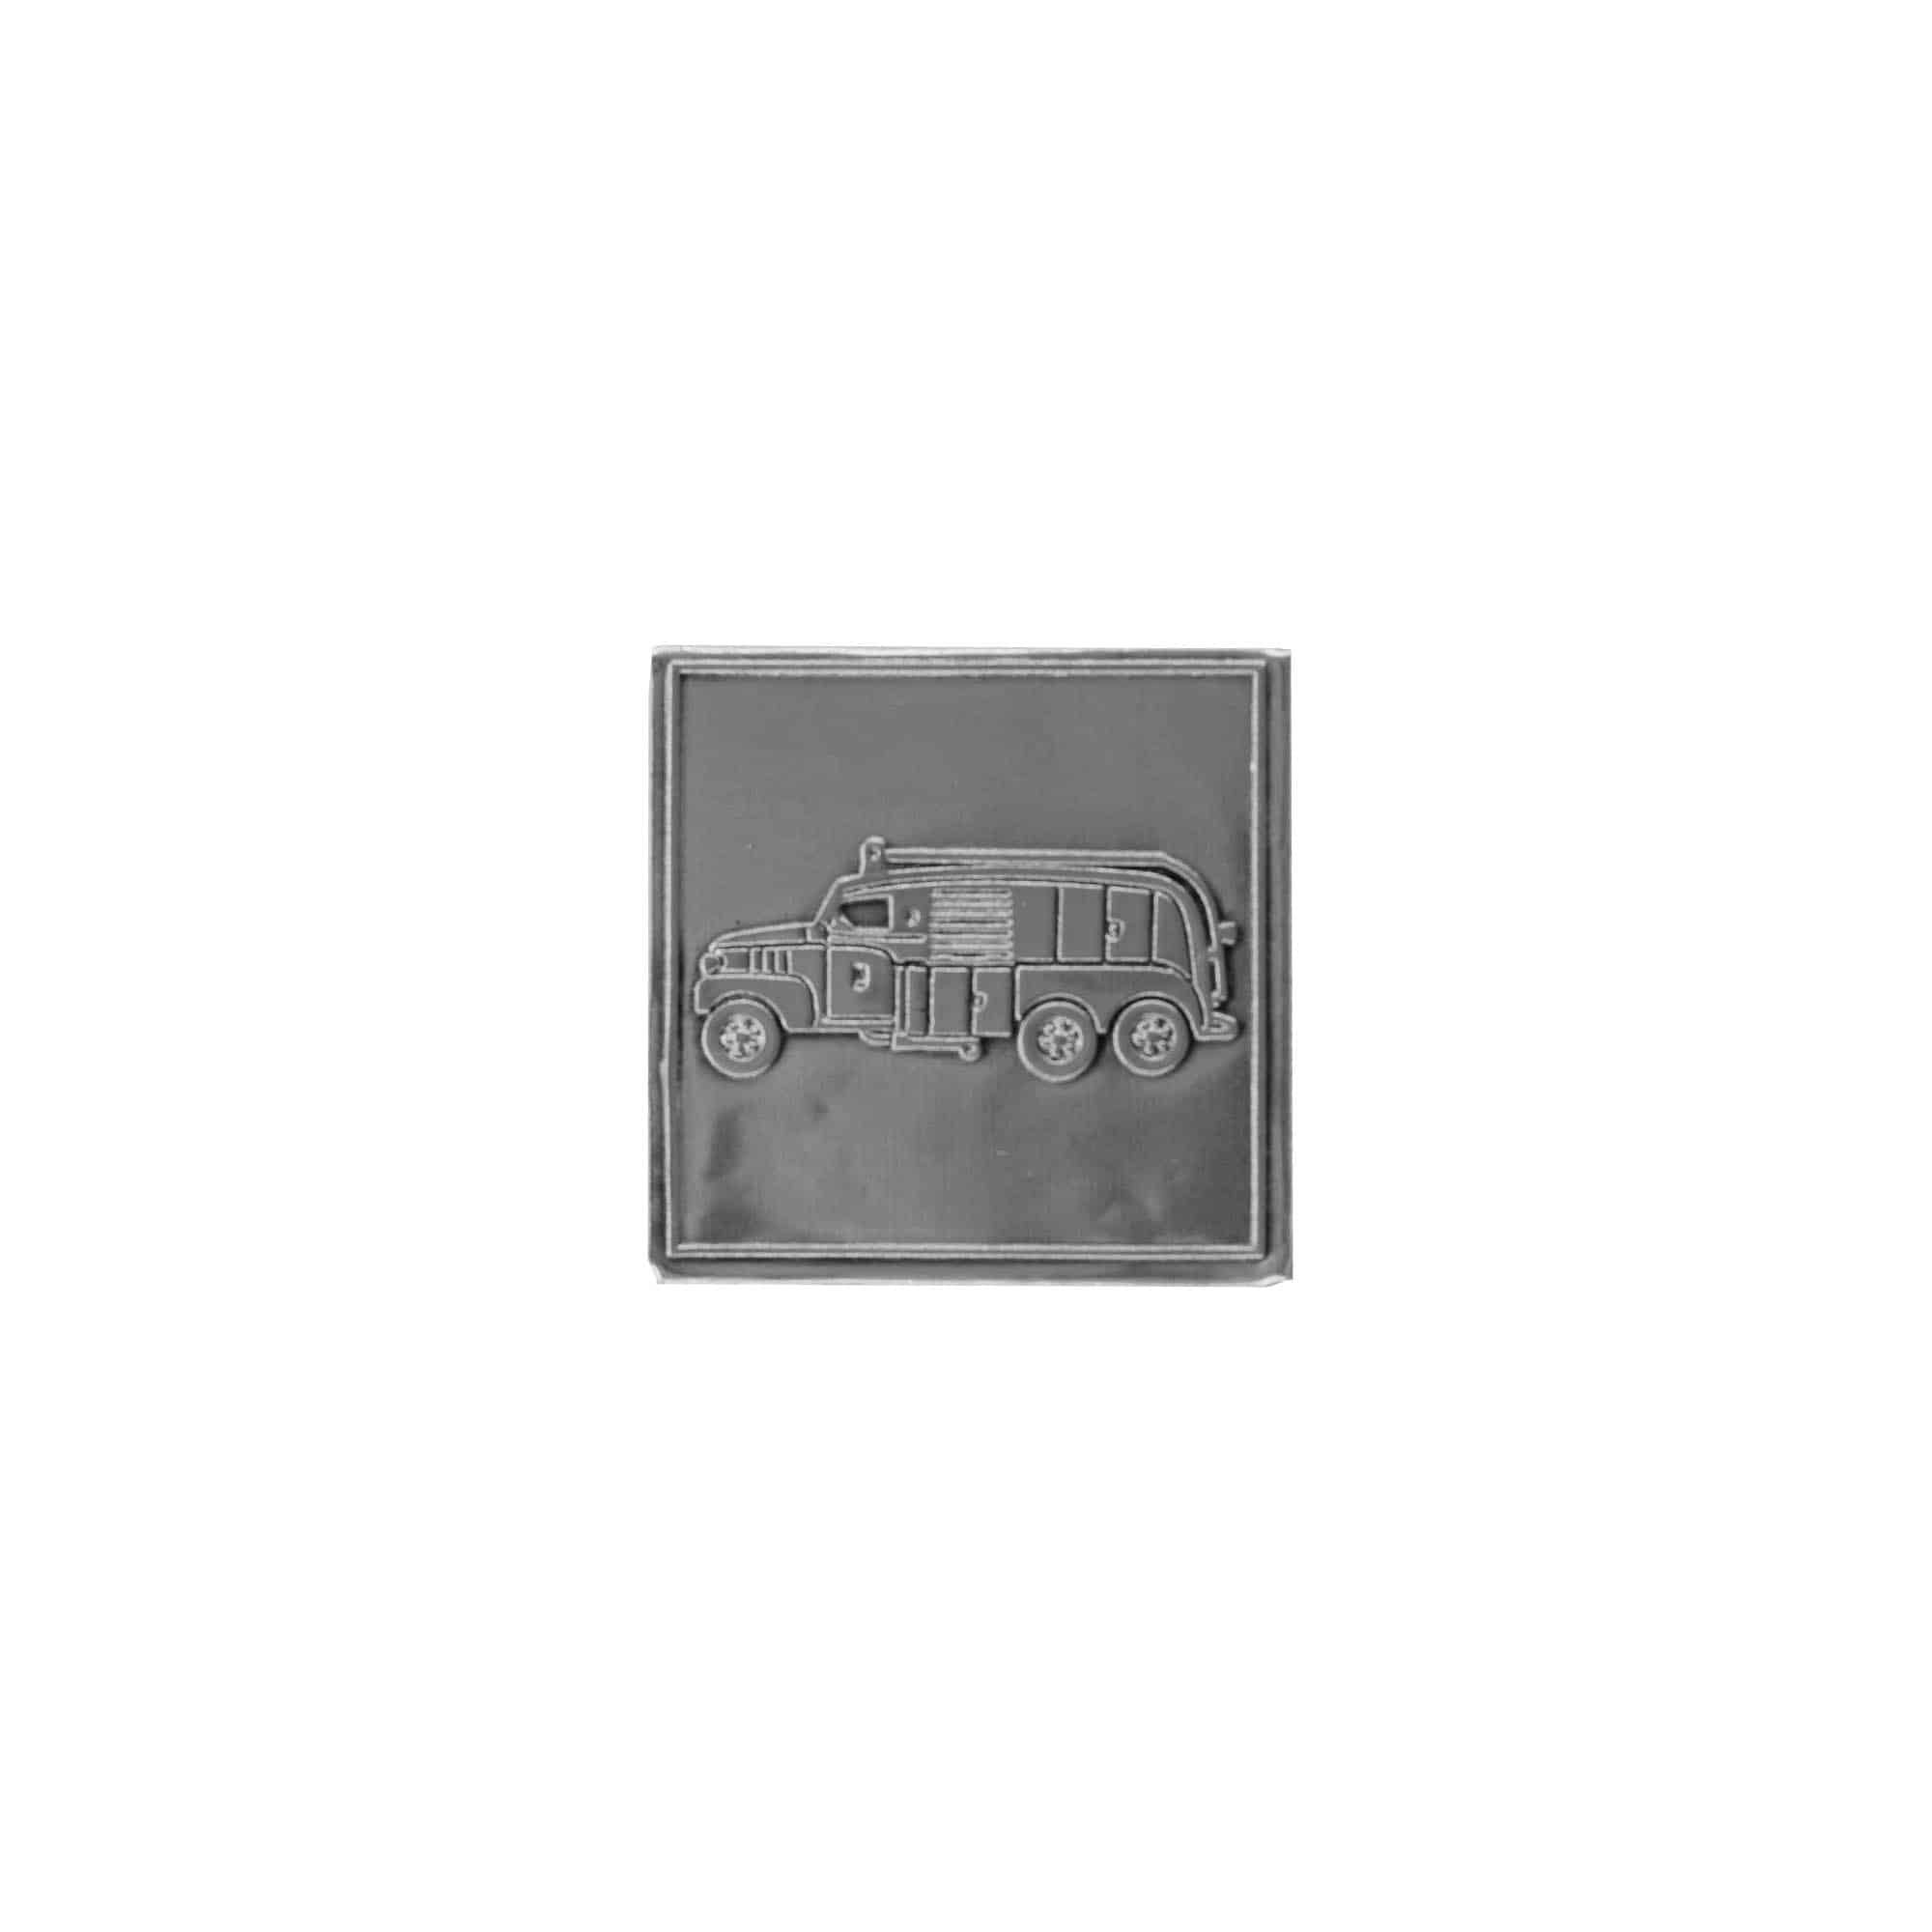 Cínový štítek 'Hasičské auto', čtvercový, kov, stříbrný